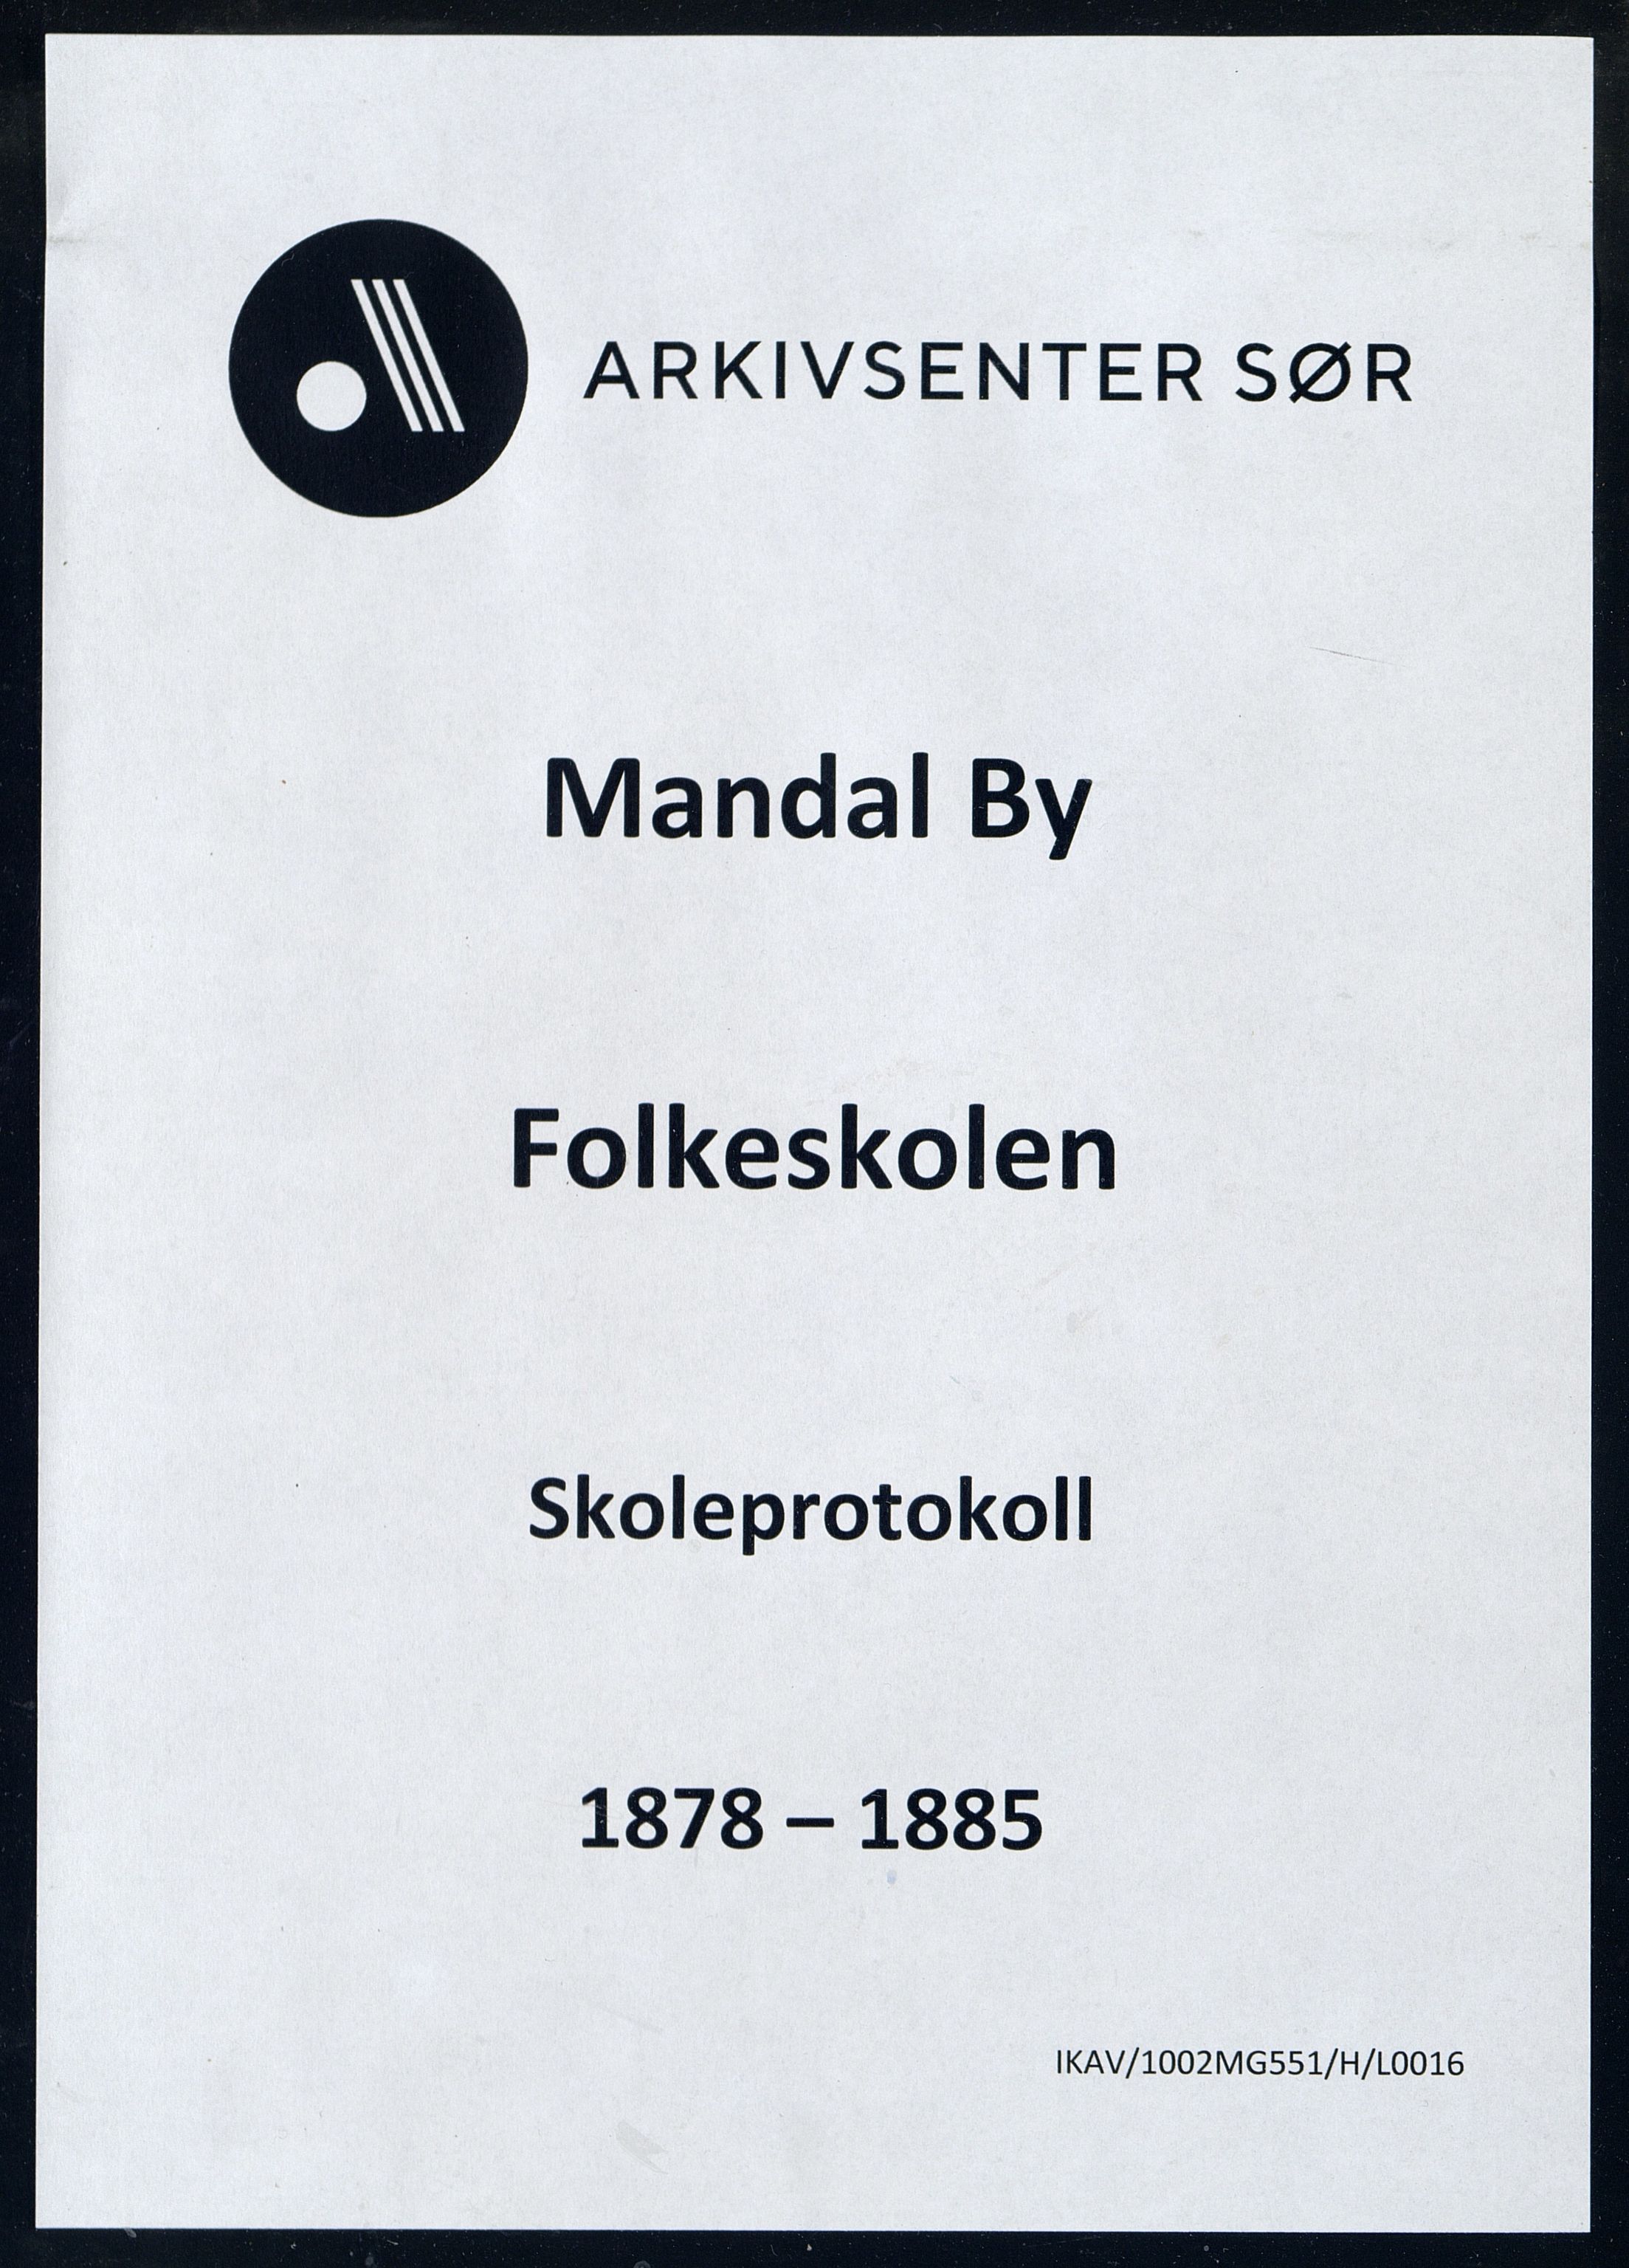 Mandal By - Mandal Allmueskole/Folkeskole/Skole, IKAV/1002MG551/H/L0016: Skoleprotokoll, 1878-1885